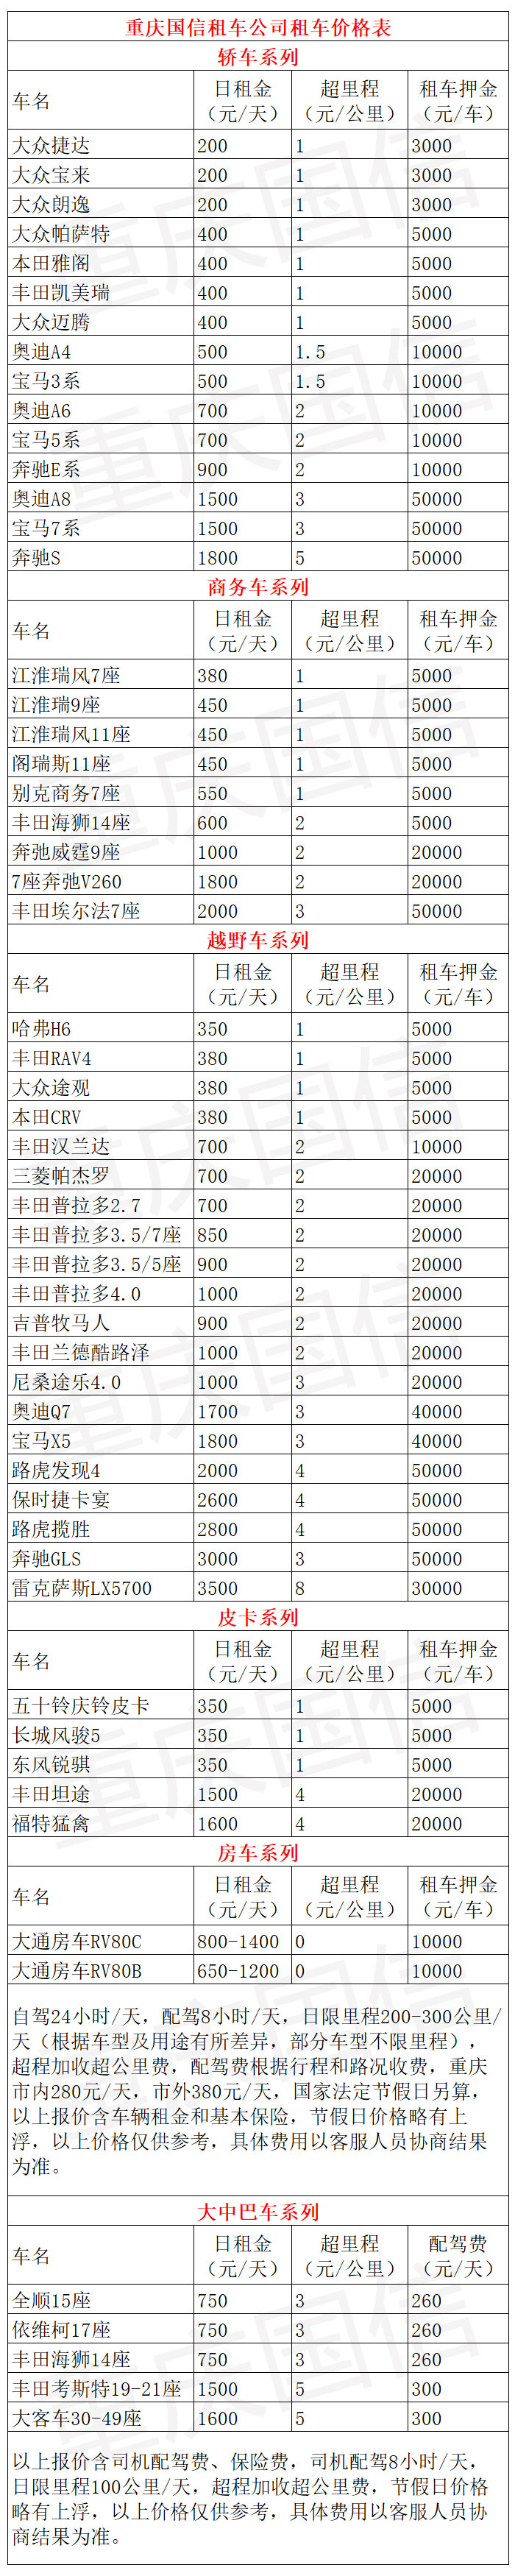 重庆国信租车公司提供的重庆市春节租车价格表